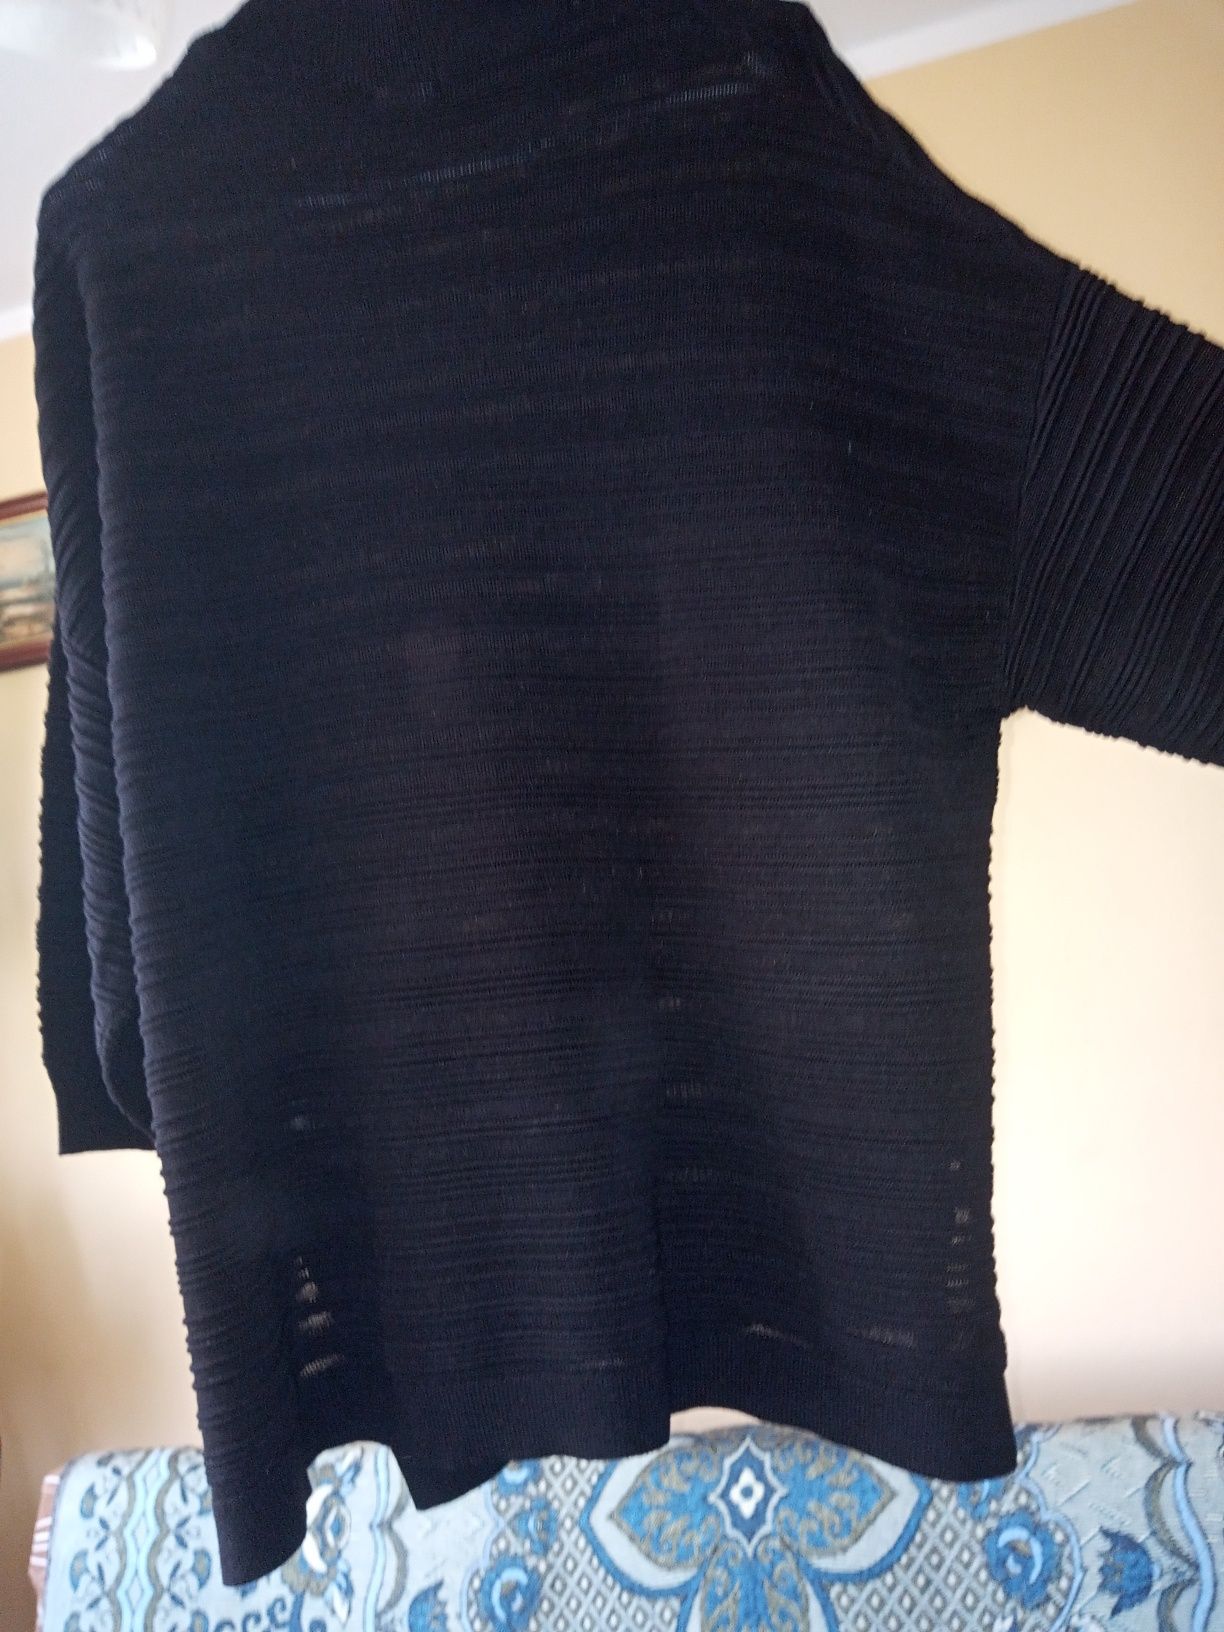 Sweterek czarny duży rozmiar XXL